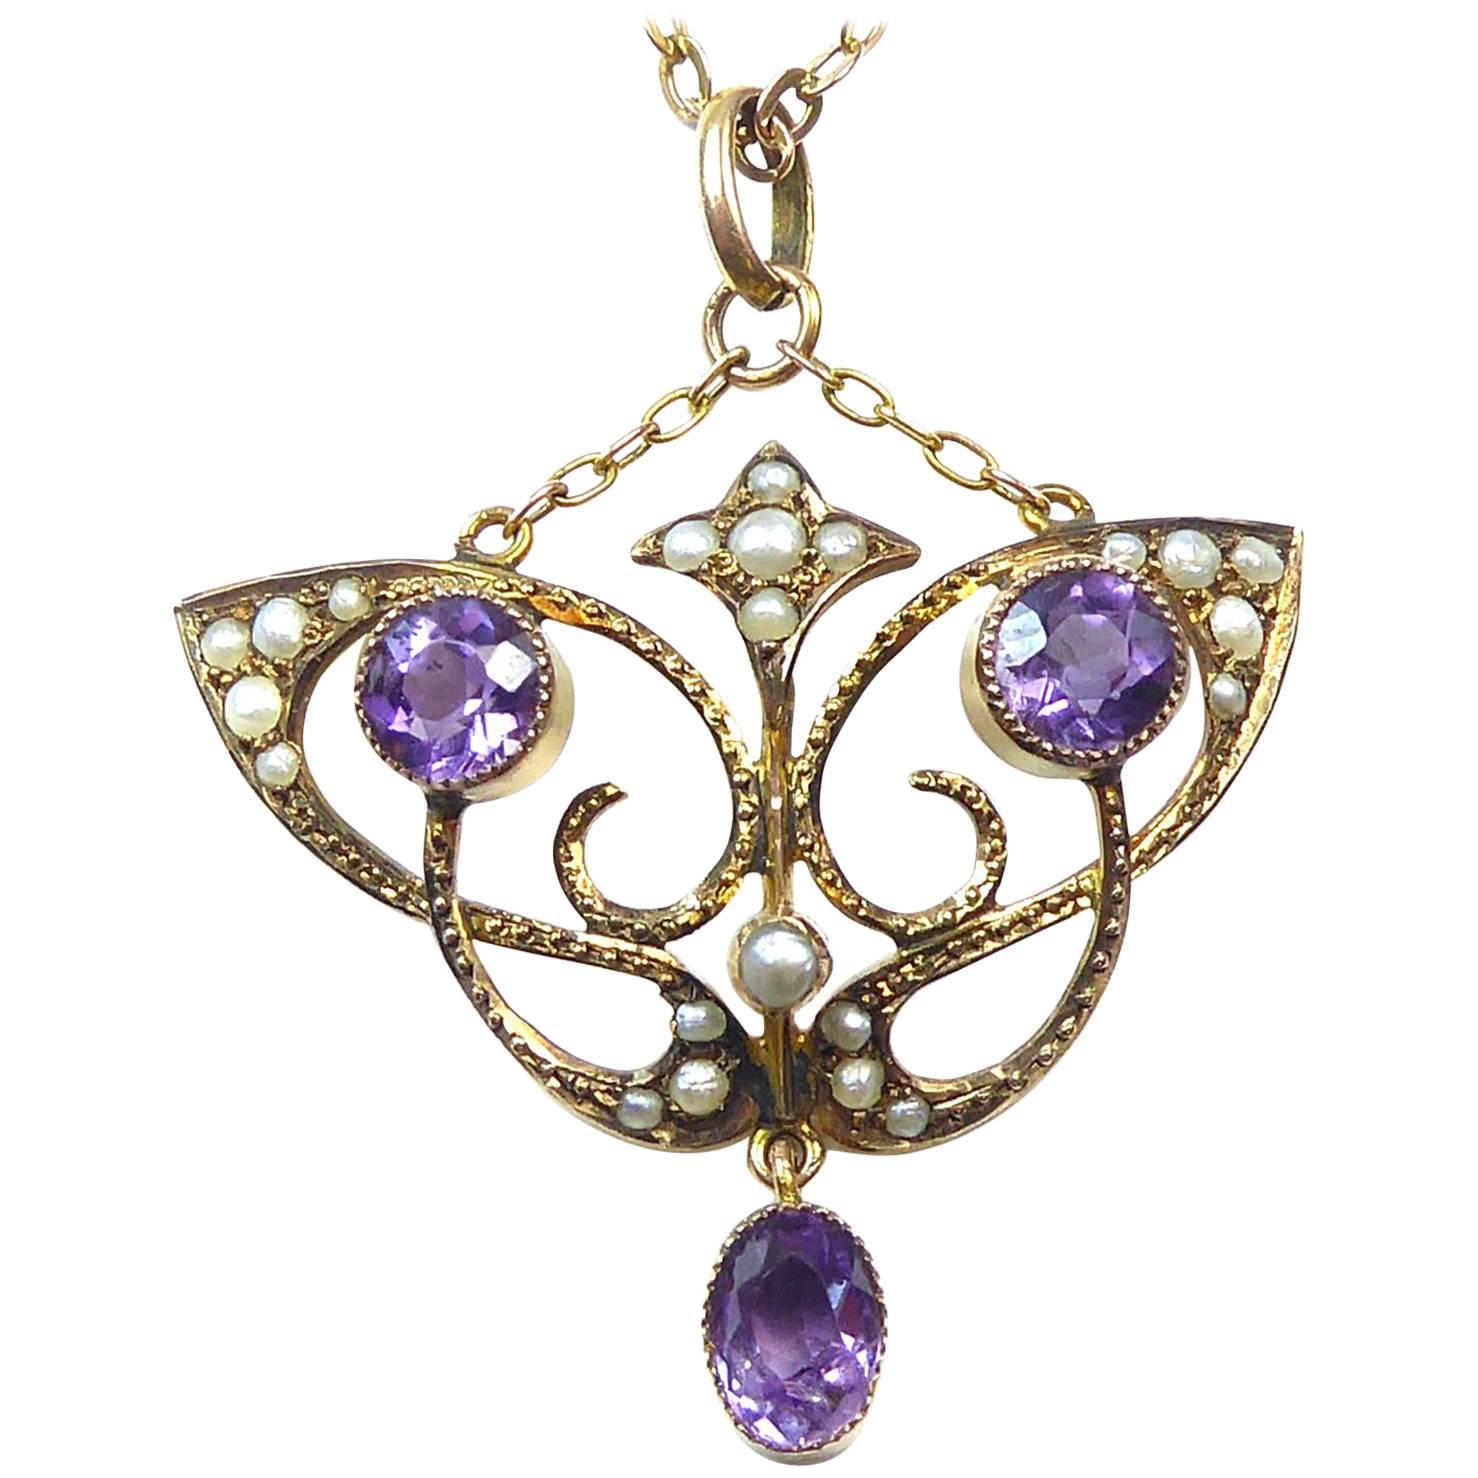 Antique Art Nouveau Pendant, Amethyst and Pearl, 9 Carat Chain